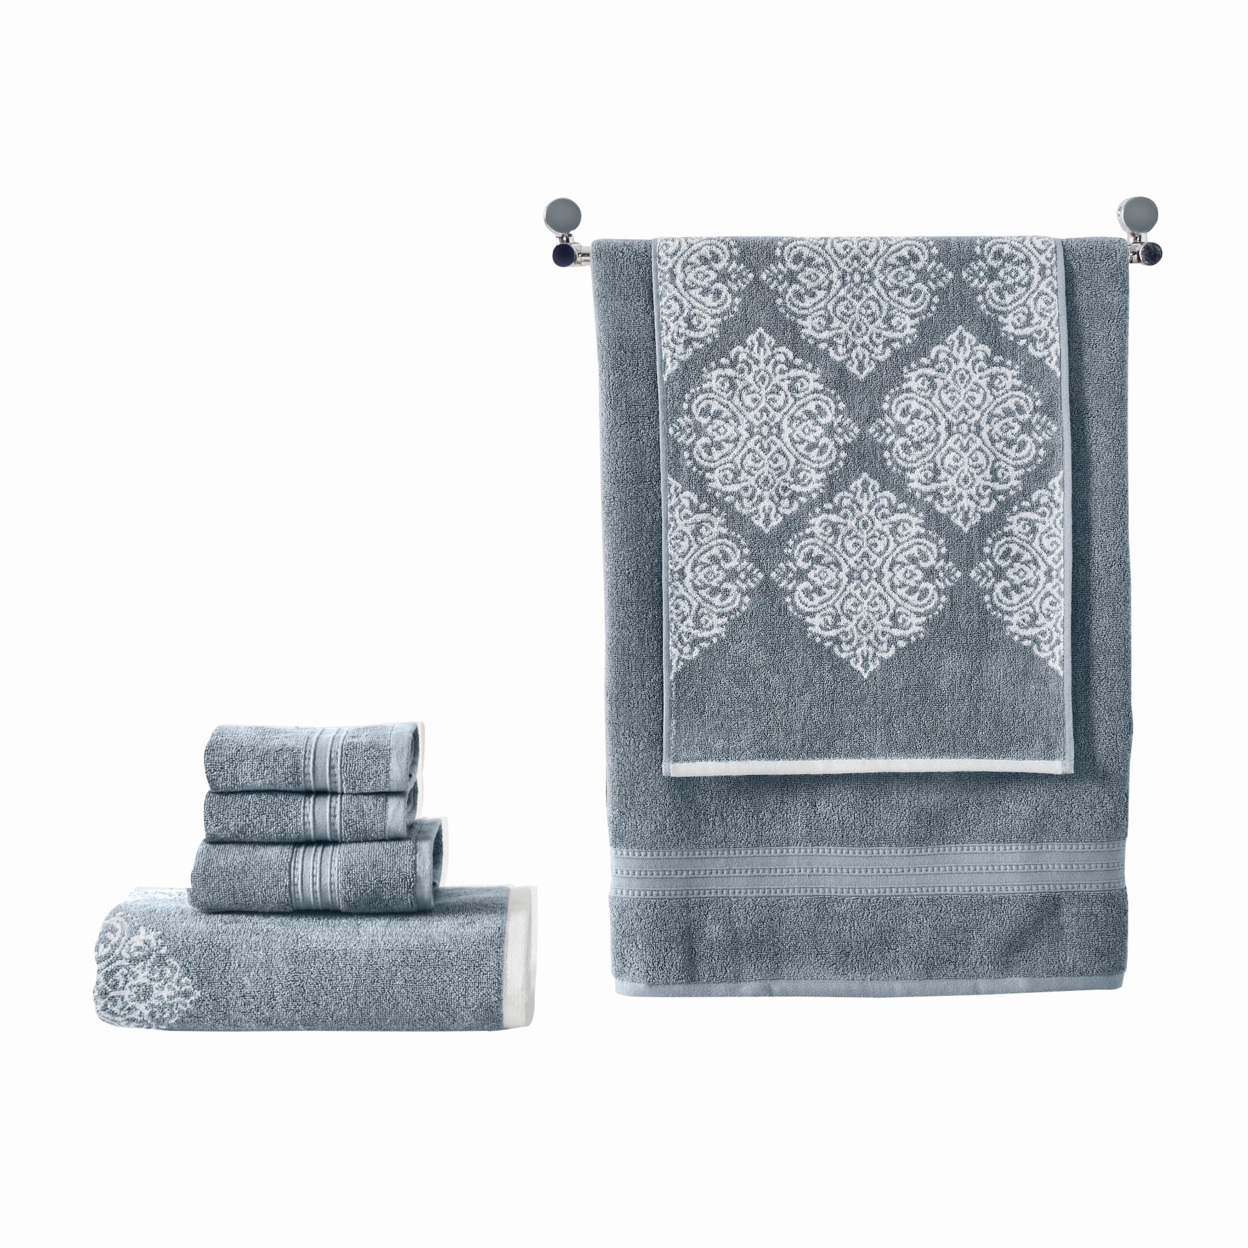 Eula Modern 6 Piece Cotton Towel Set, Stylish Damask Pattern, Slate Blue- Saltoro Sherpi